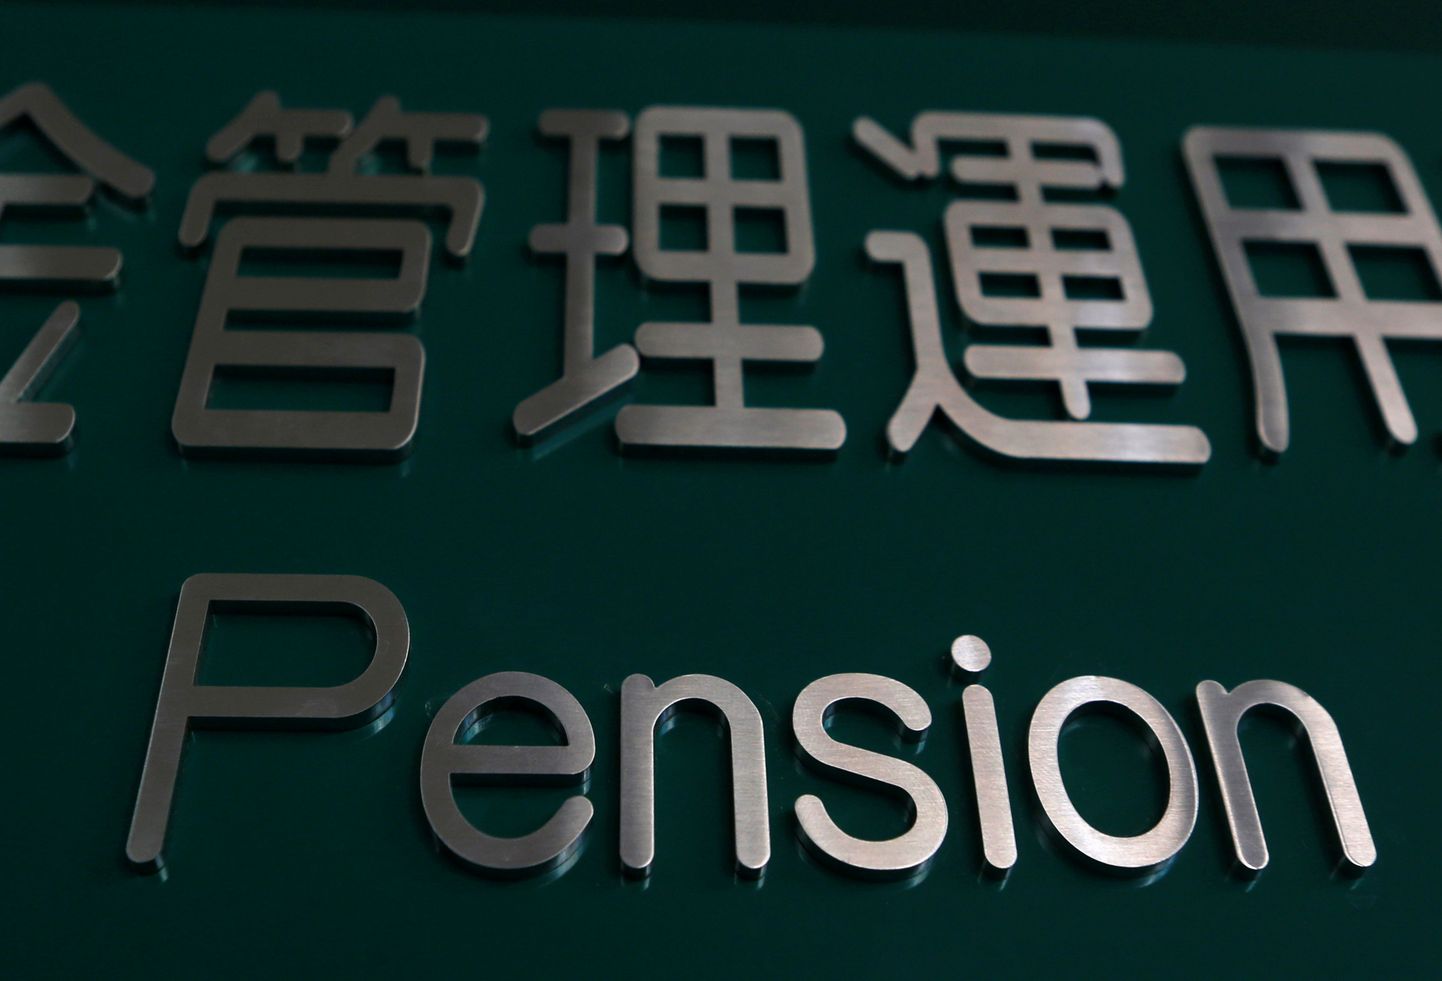 Maailma suurim pensionifond on tipus.